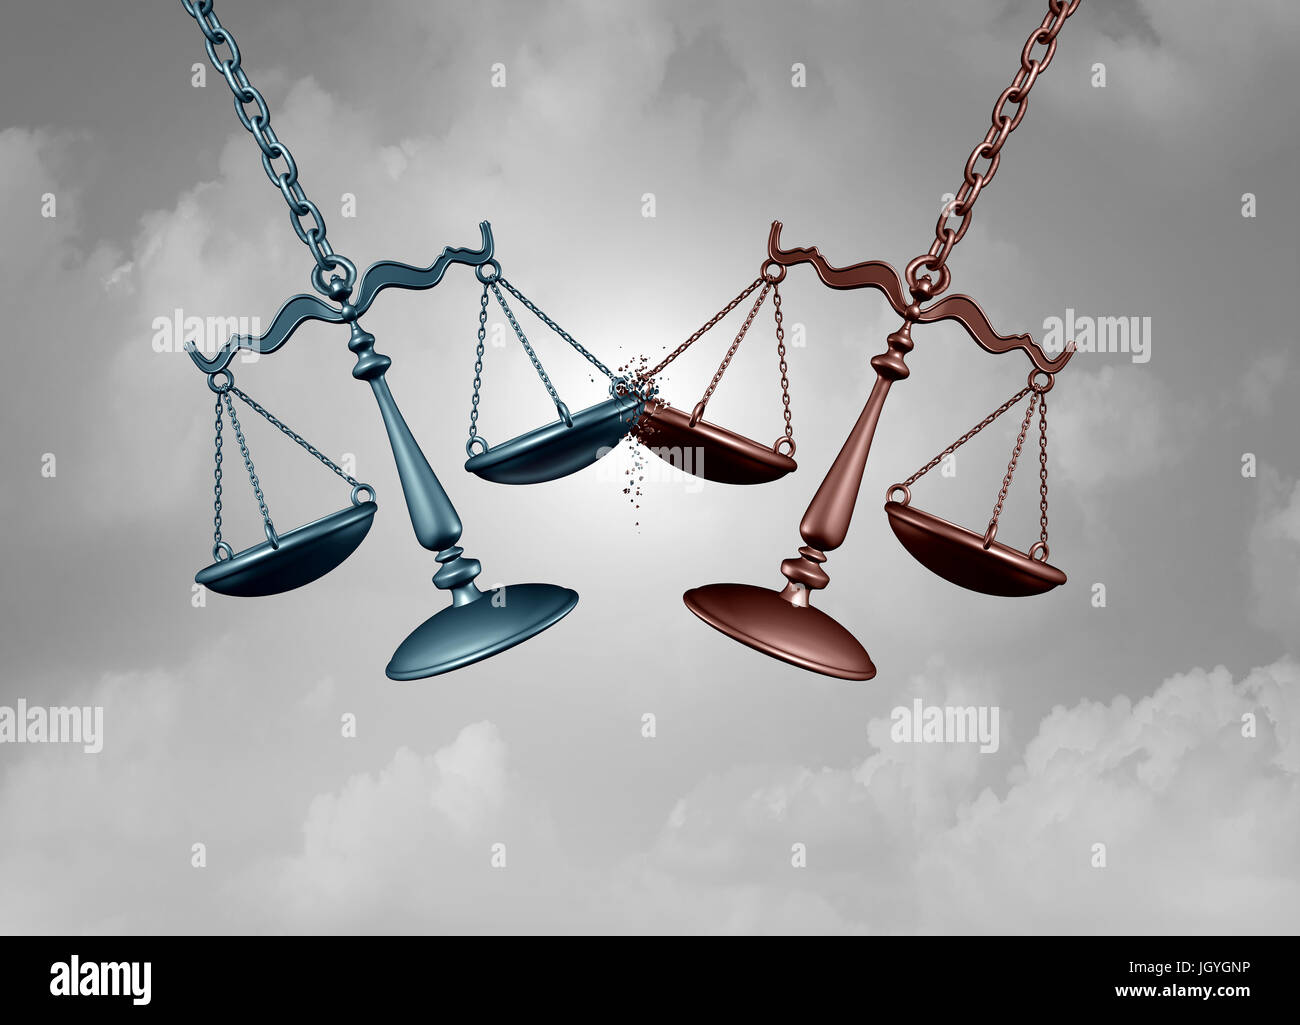 Bataille juridique collectif concept que deux échelles de la justice se battre les uns les autres comme une cour de justice lutte symbole représentant un avocat ou procureur. Banque D'Images